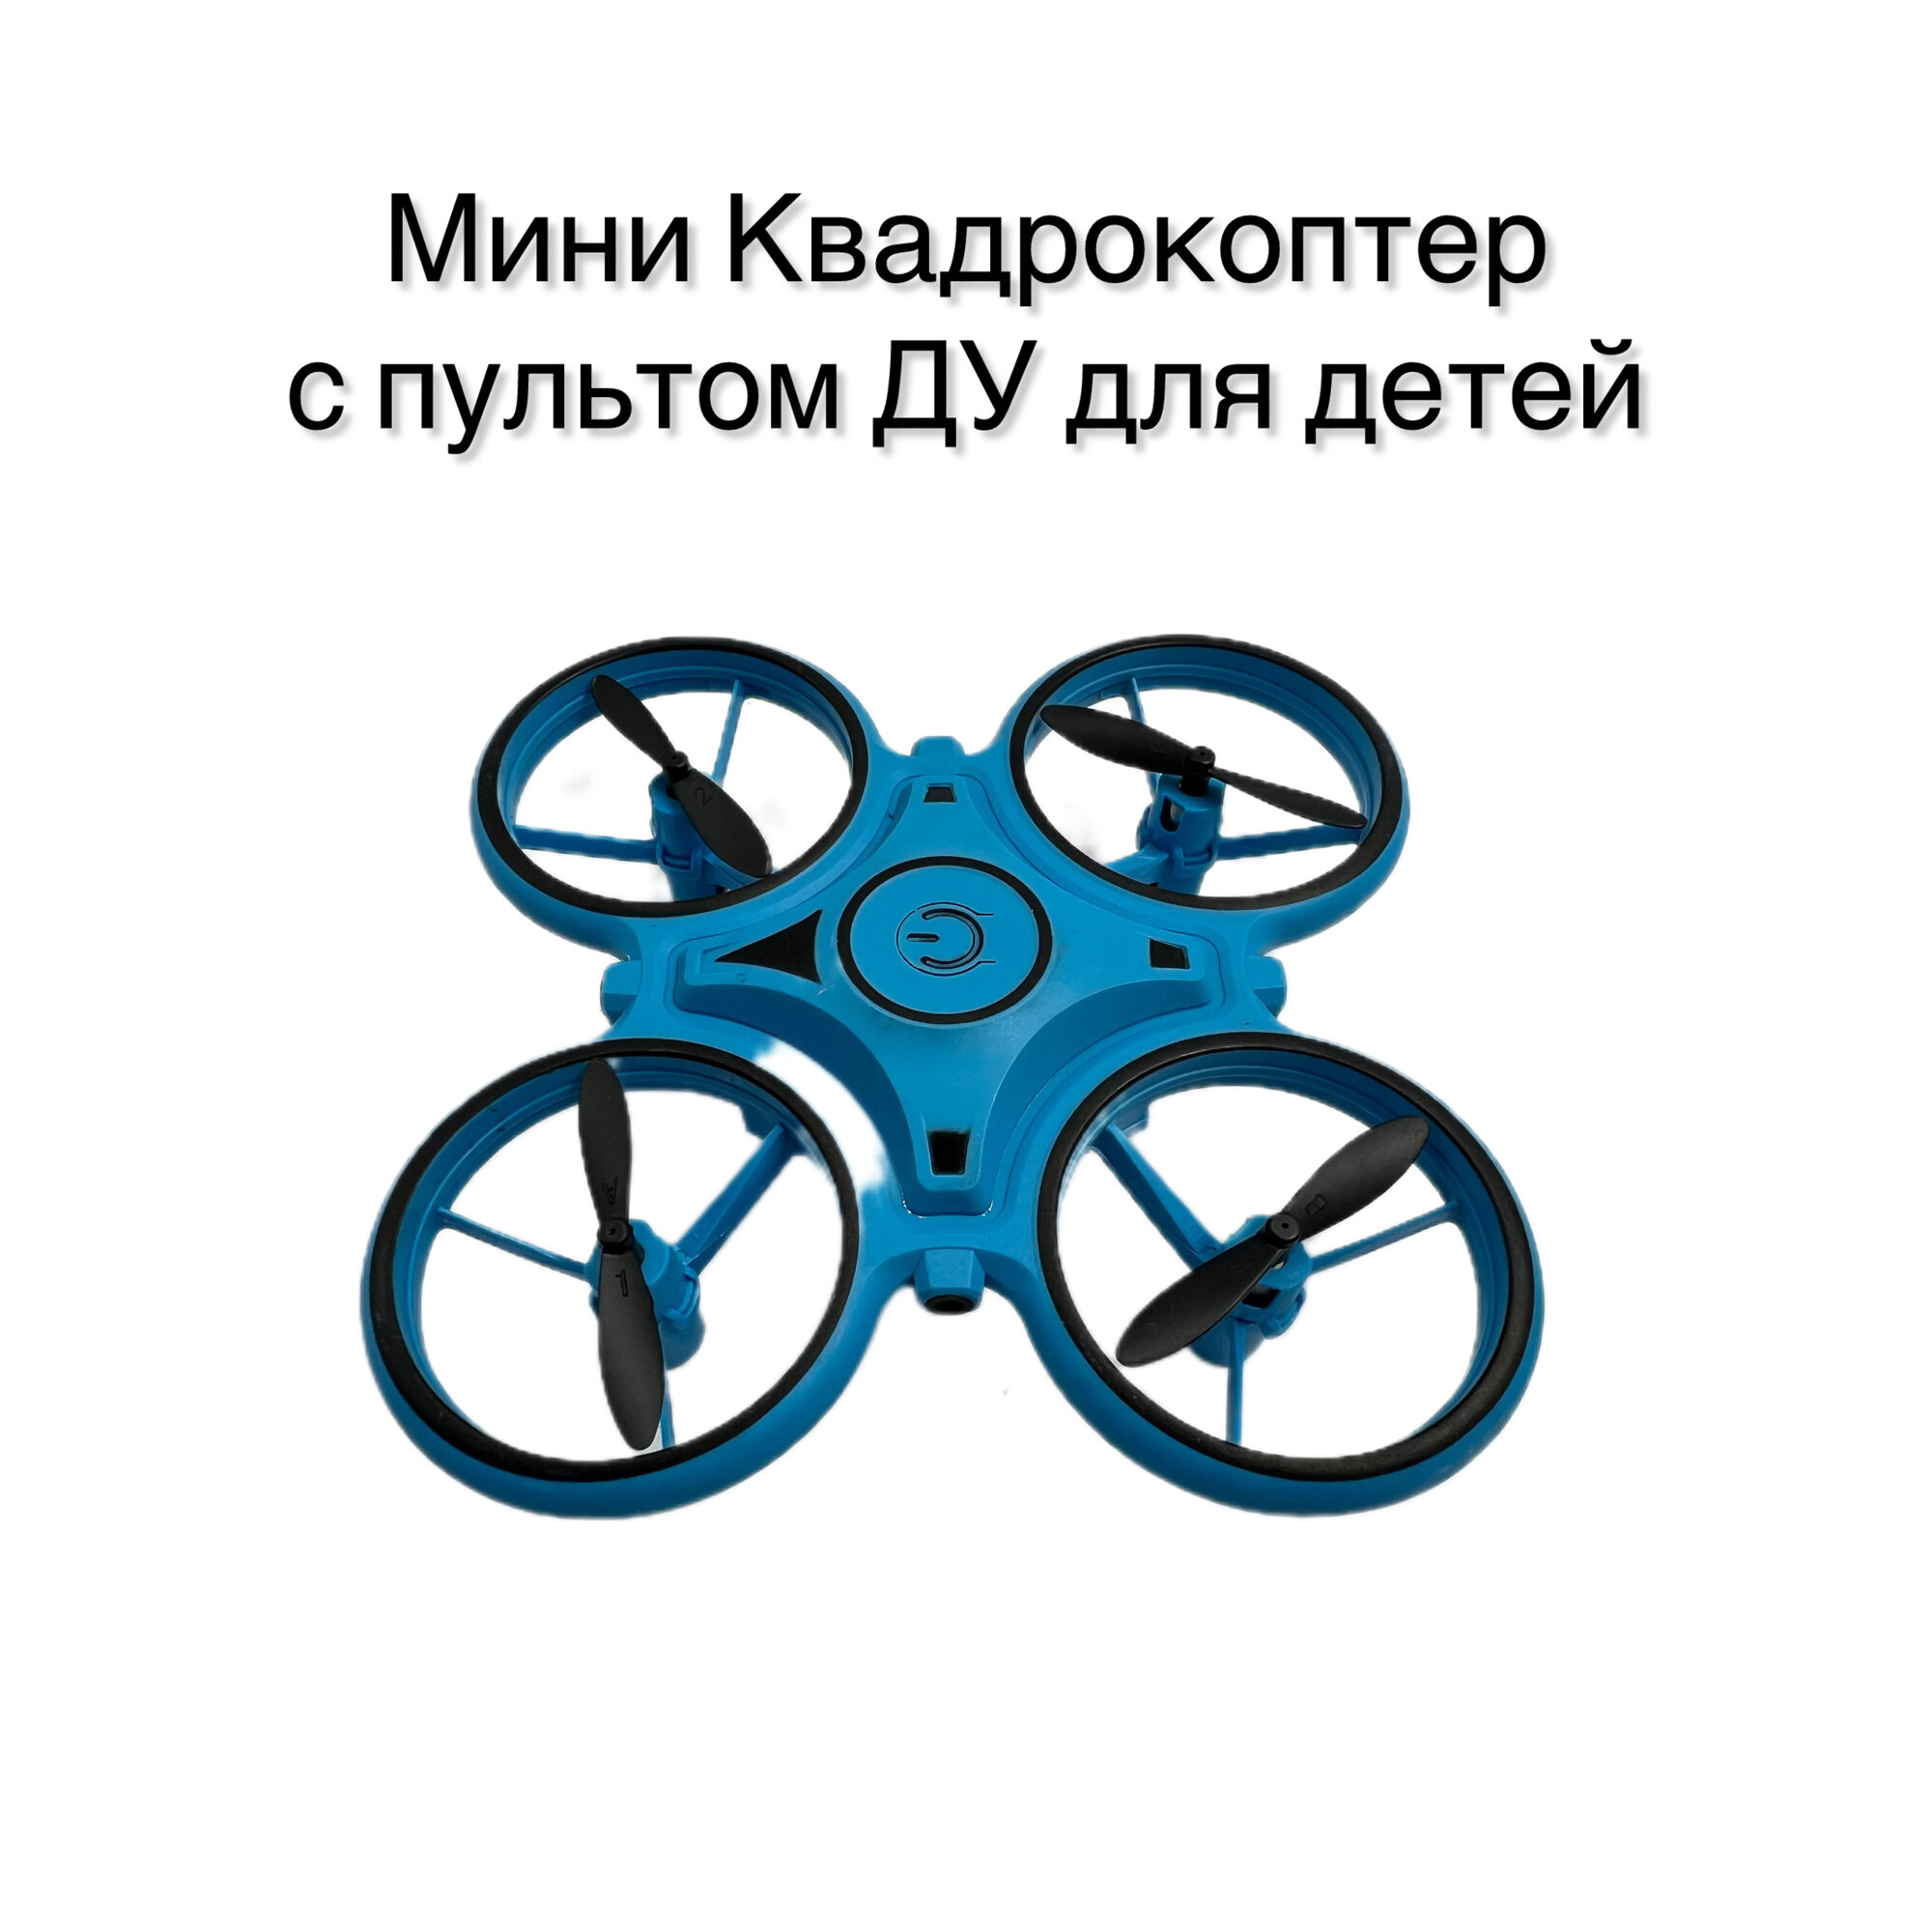 Квадрокоптер "Gamesfamily" для детей и подростков голубого цвета